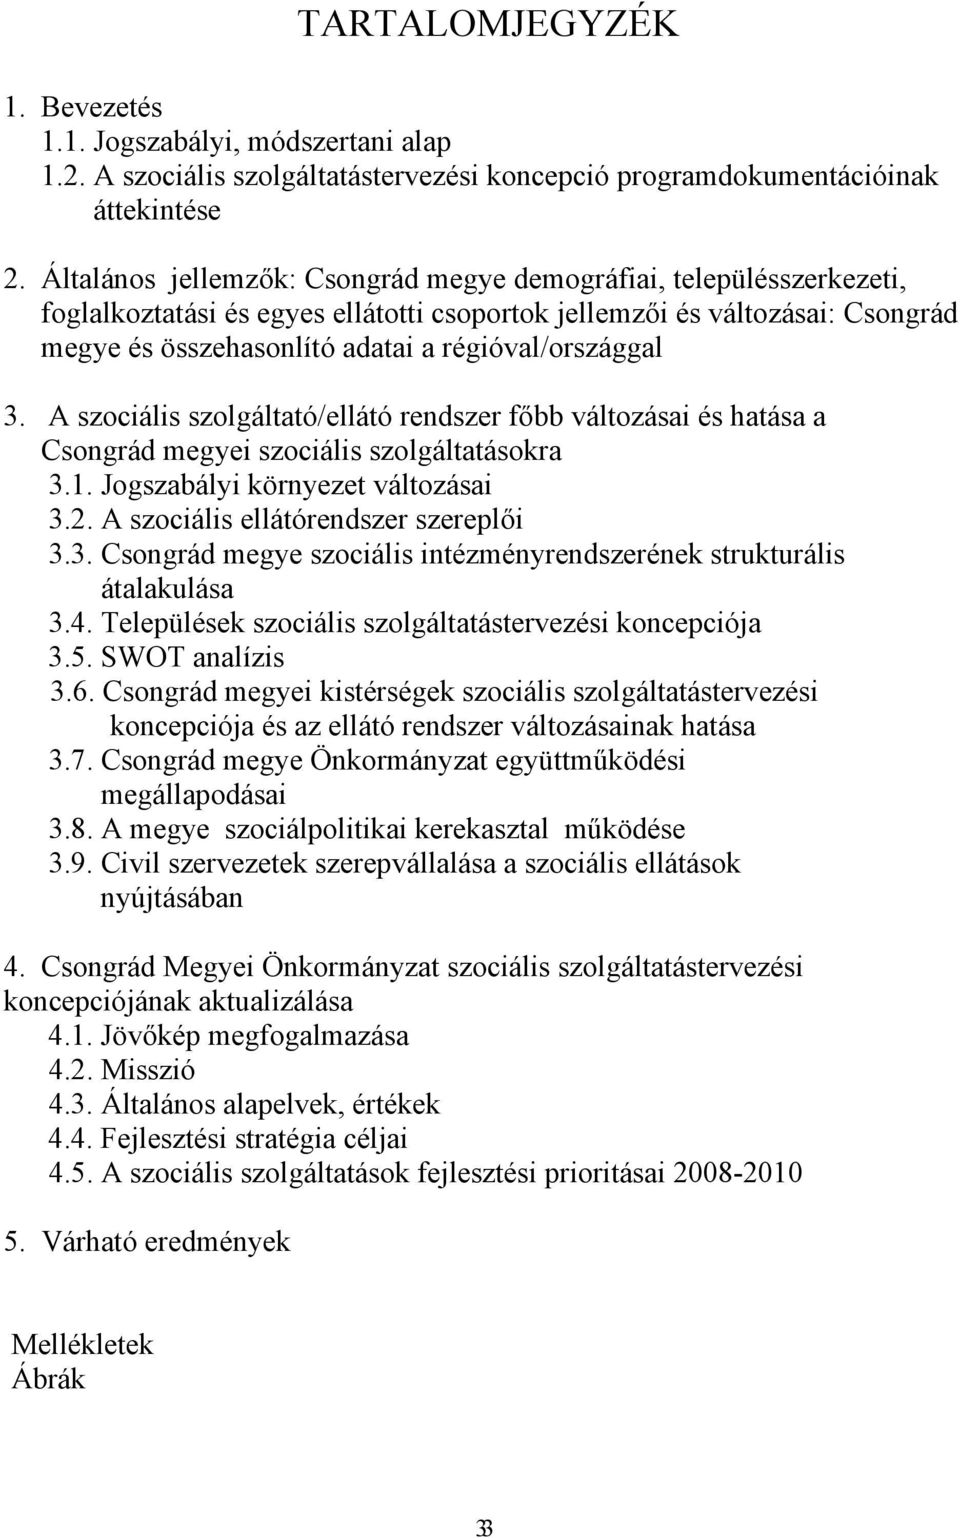 régióval/országgal 3. A szociális szolgáltató/ellátó rendszer főbb változásai és hatása a Csongrád megyei szociális szolgáltatásokra 3.1. Jogszabályi környezet változásai 3.2.